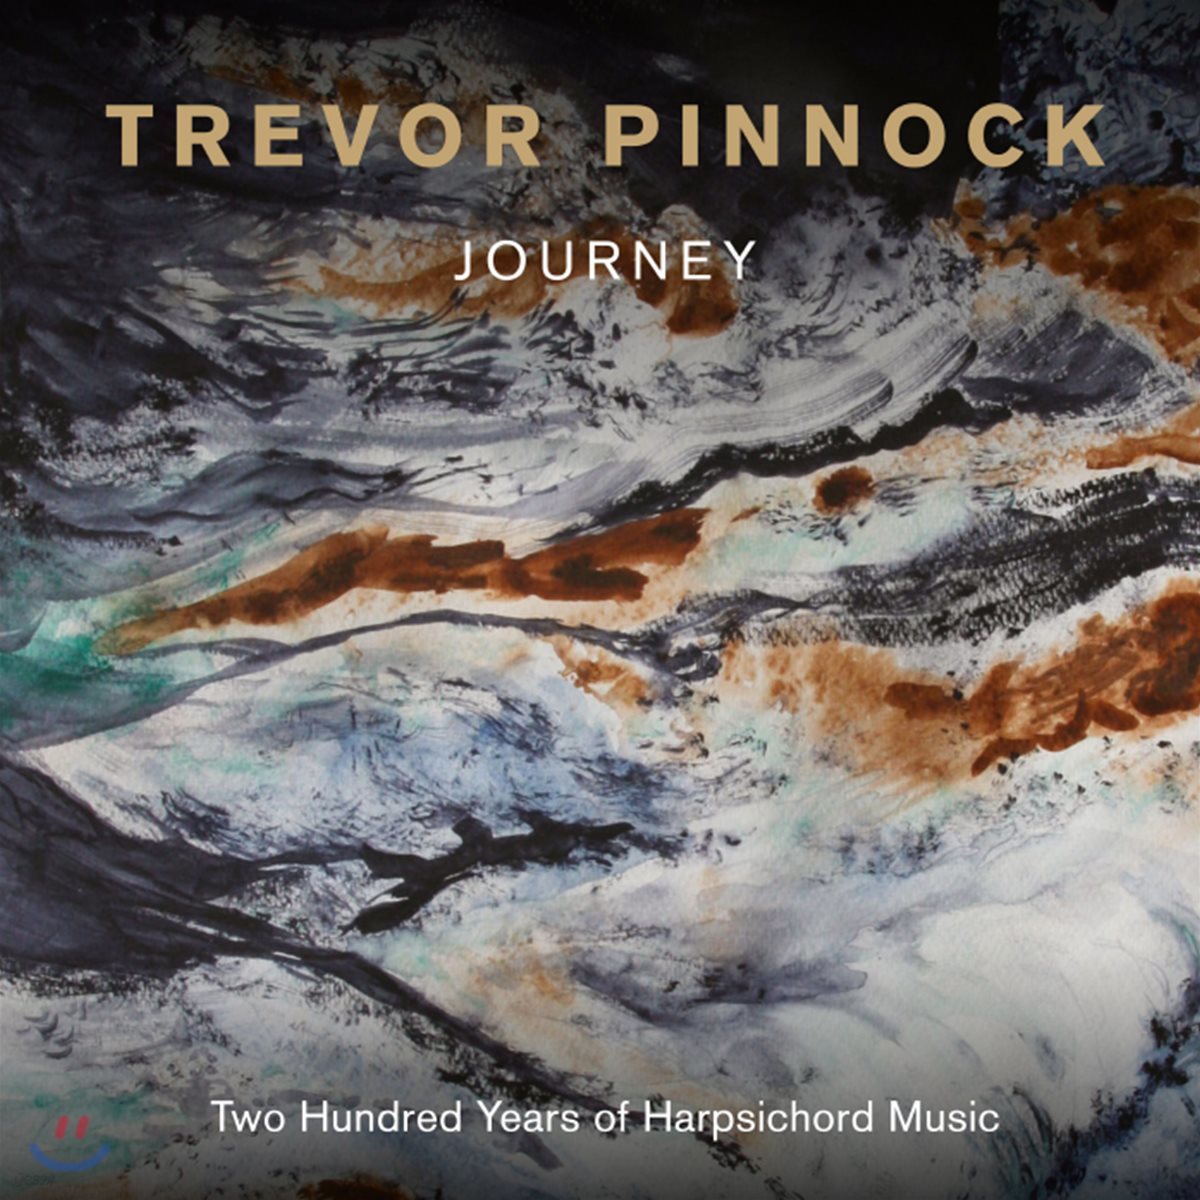 Trevor Pinnock 트레버 피노크의 여행 - 하프시코드 음악의 200년 (Journey)